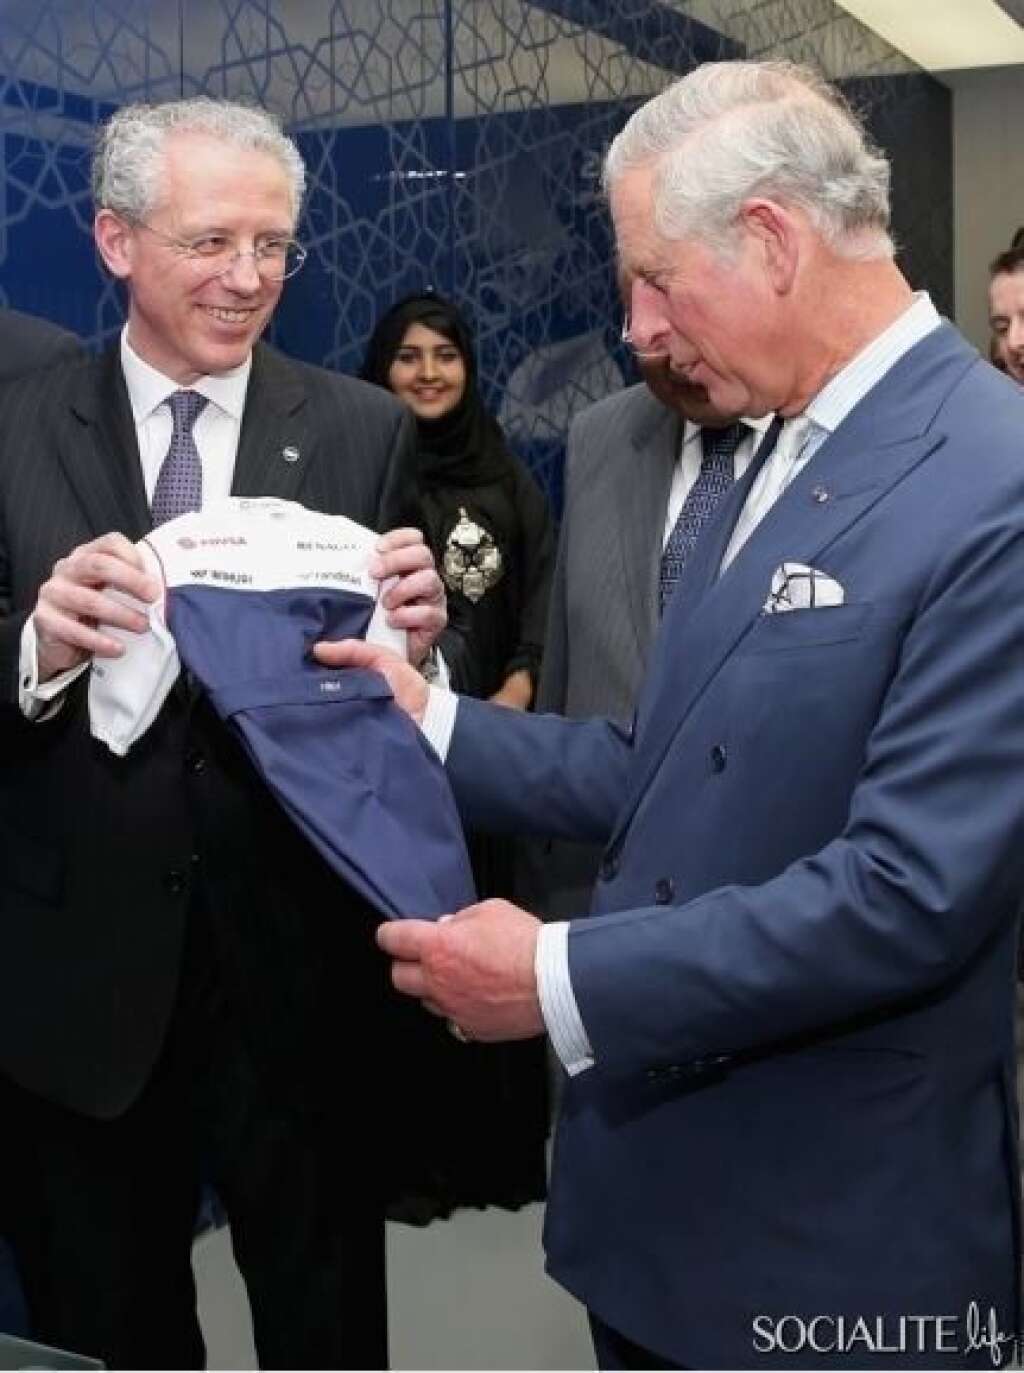 Une tenue de pilote de F1 - En visite au Moyen-Orient en mars dernier, le prince Charles et son épouse Camilla ont reçu un cadeau destiné à leur petit-enfant. Il s'agit d'une une combinaison de pilote de Formule 1, pour bébé, qui a été offerte lors de leur visite au Parc des Sciences et des Technologies du Qatar.  Sur la tenue sont brodés les trois lettres "HRH", pour "son altesse royale".